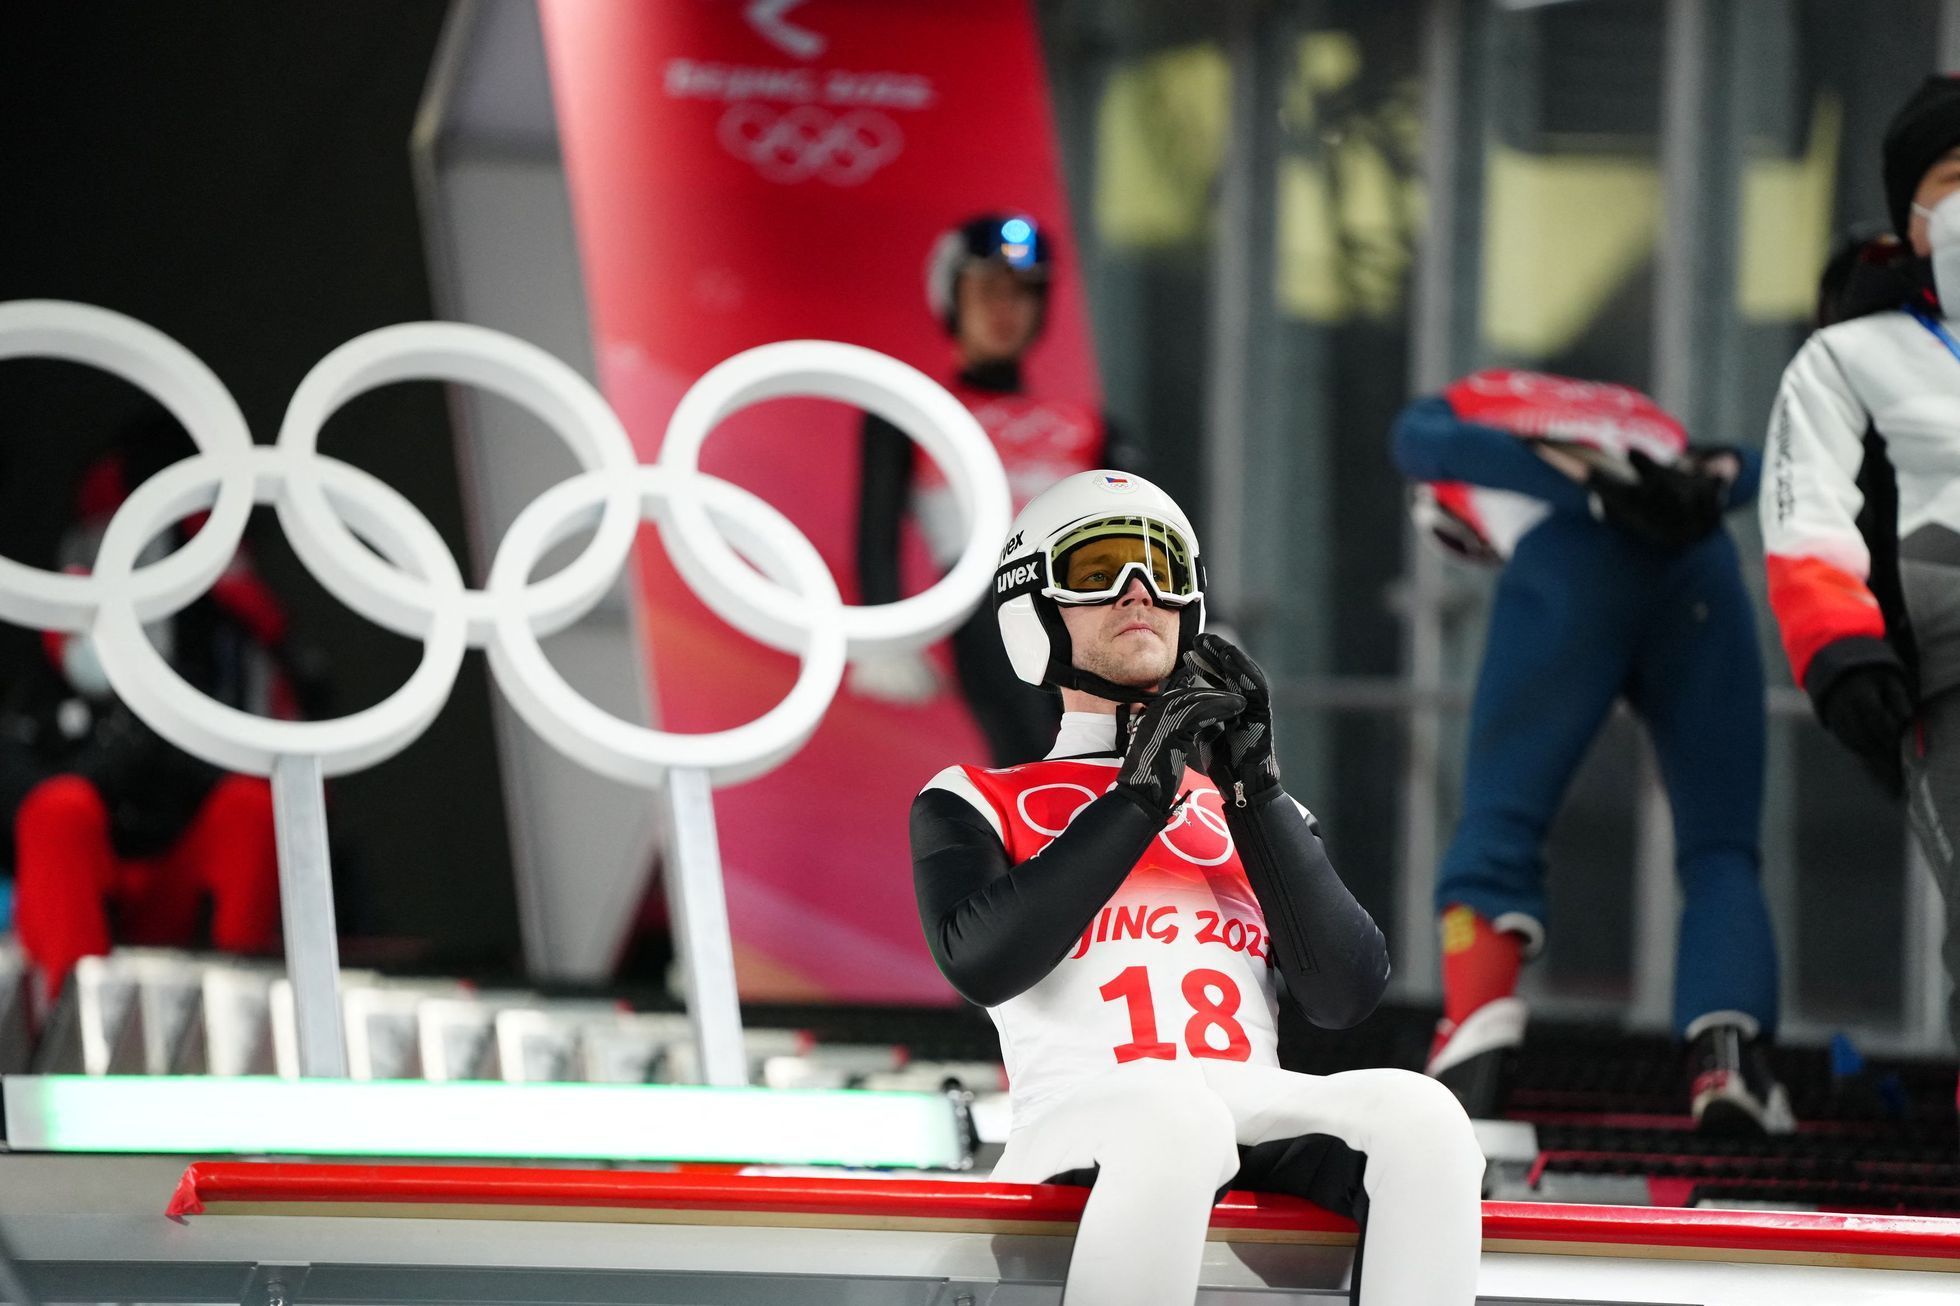 Skokan na lyžích Roman Koudelka v kvalifikaci na velkém můstku na ZOH 2022 v Pekingu